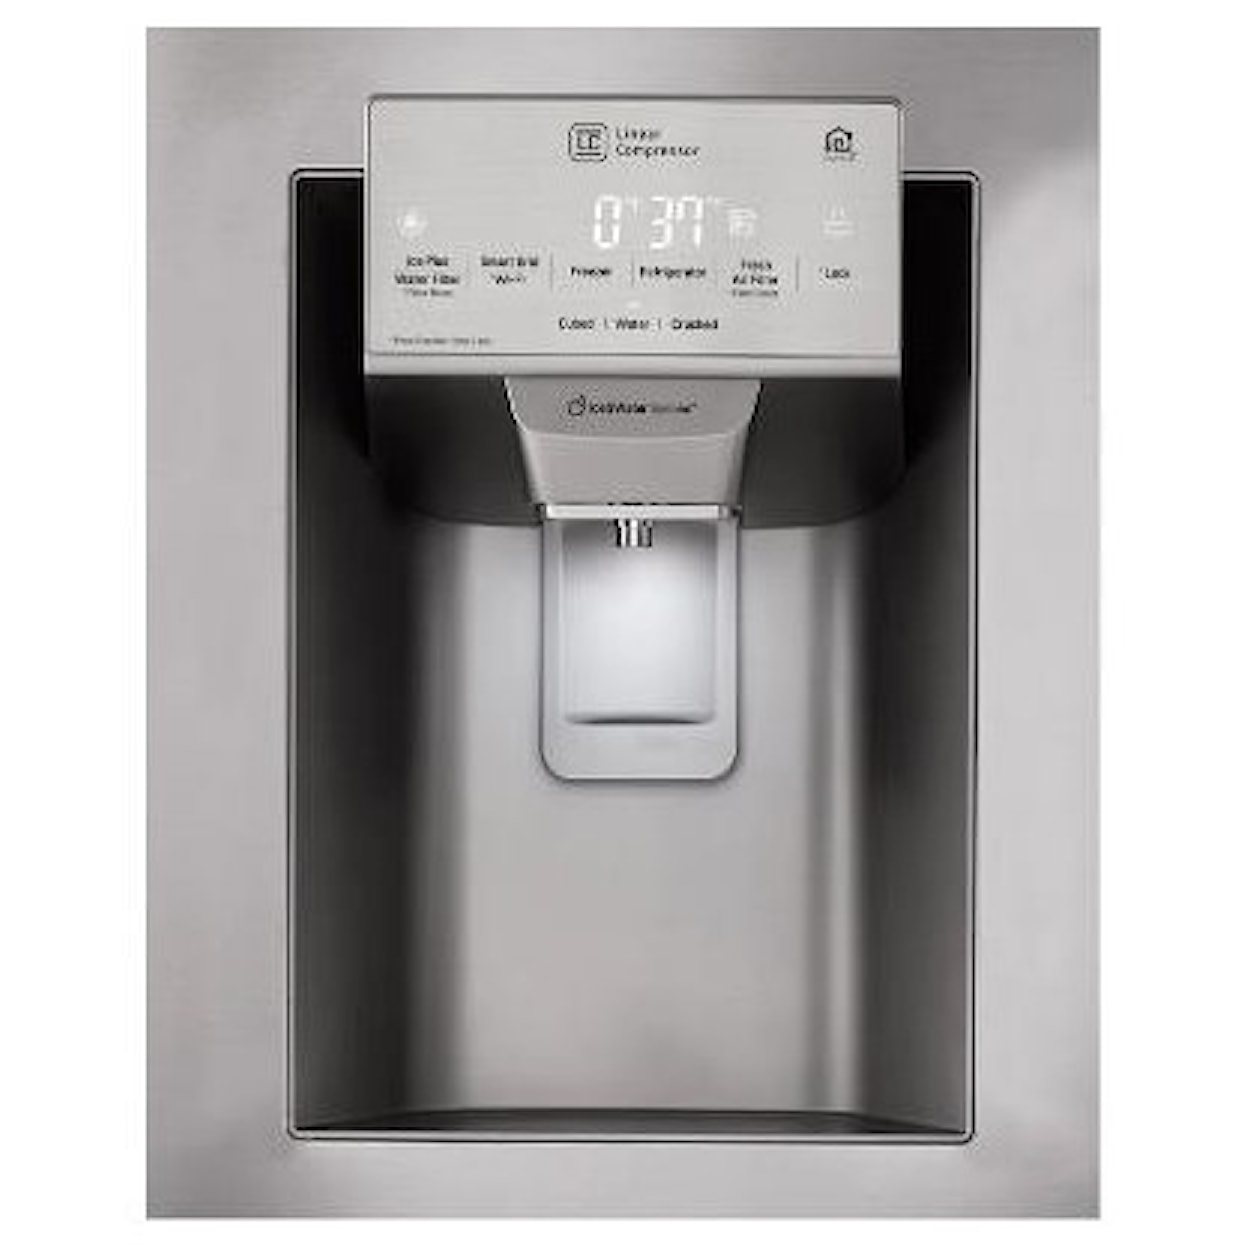 LG Appliances French Door Refrigerators 26 cu. French Door Refrigerator